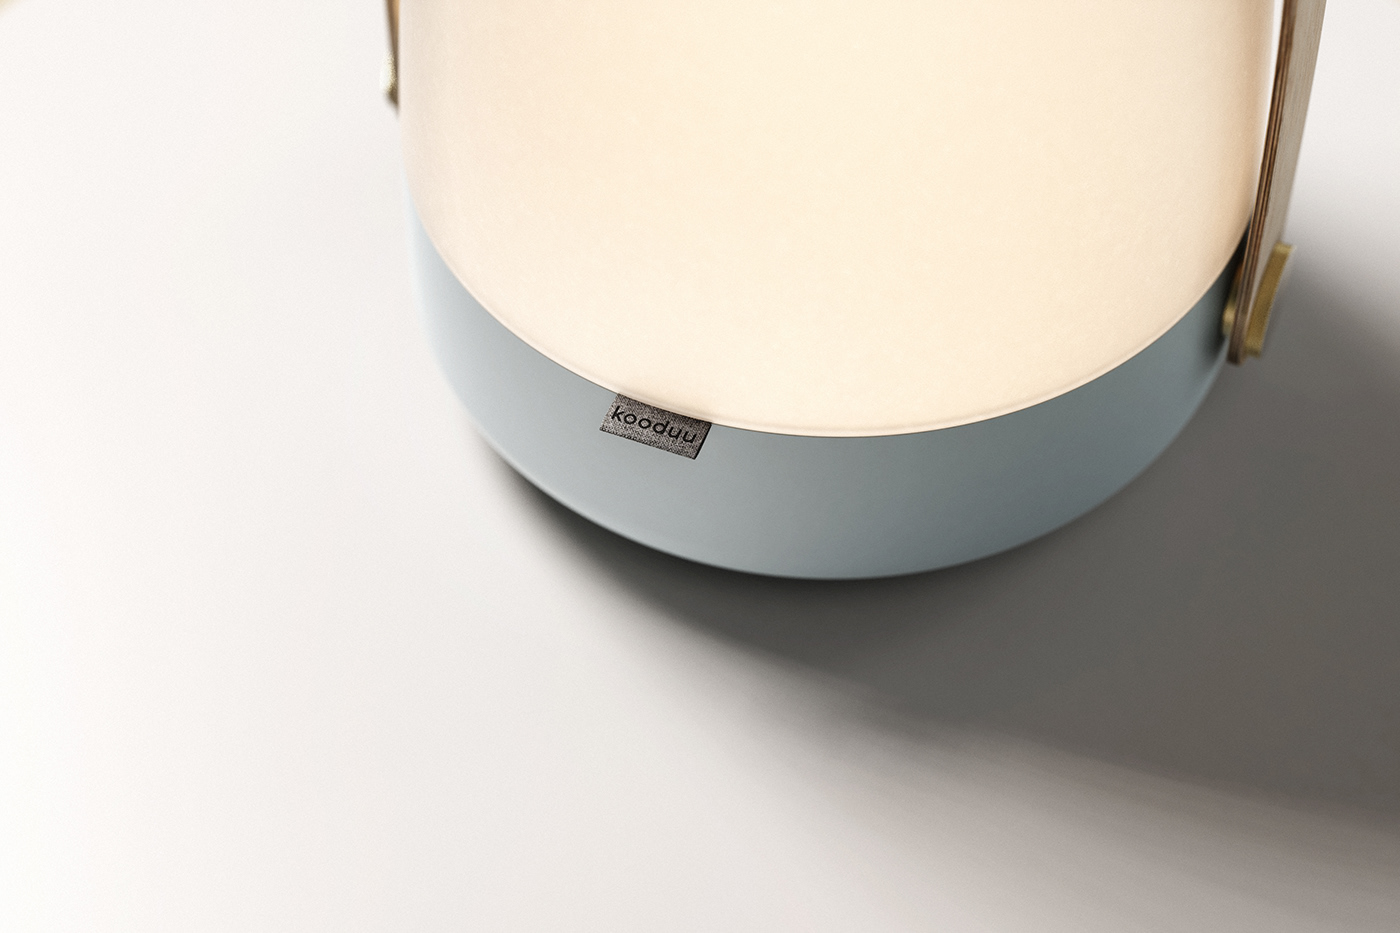 Danish Design eskild hansen design industrial design  portable lamp  product design 